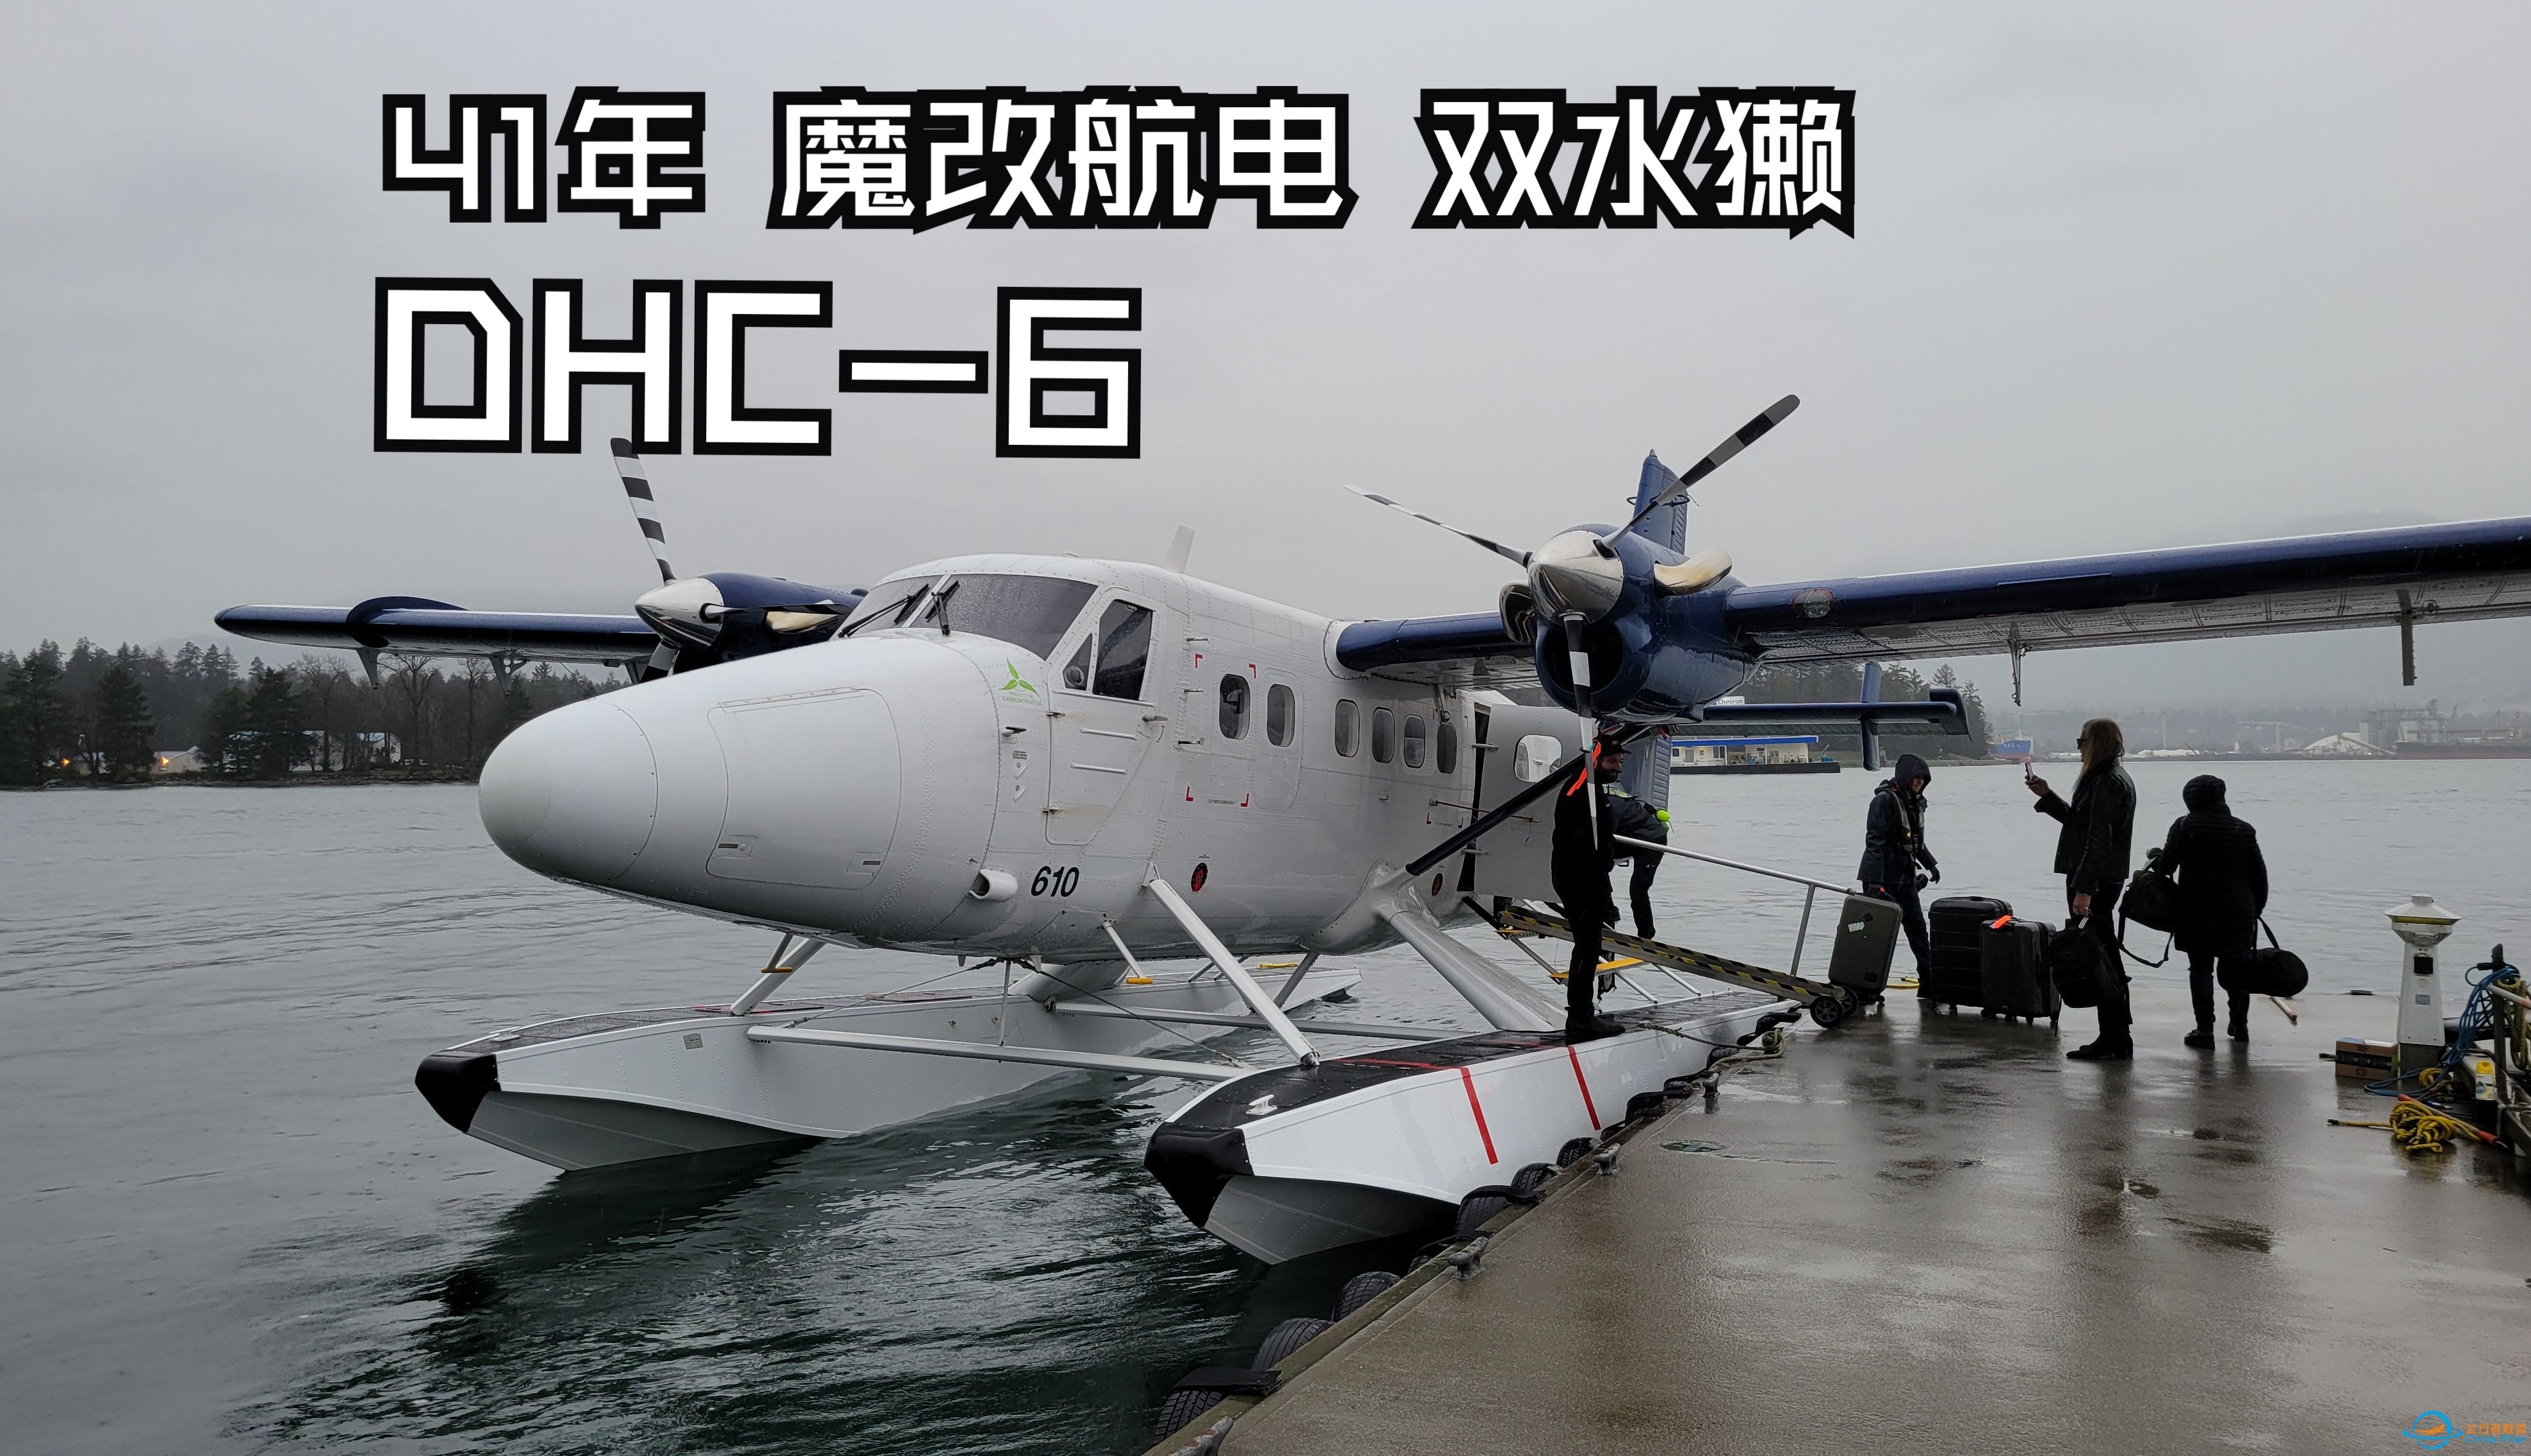 【飞行游记】41年的魔改老飞机？海港航空DHC-6双水獭水上飞机飞行体验-3573 